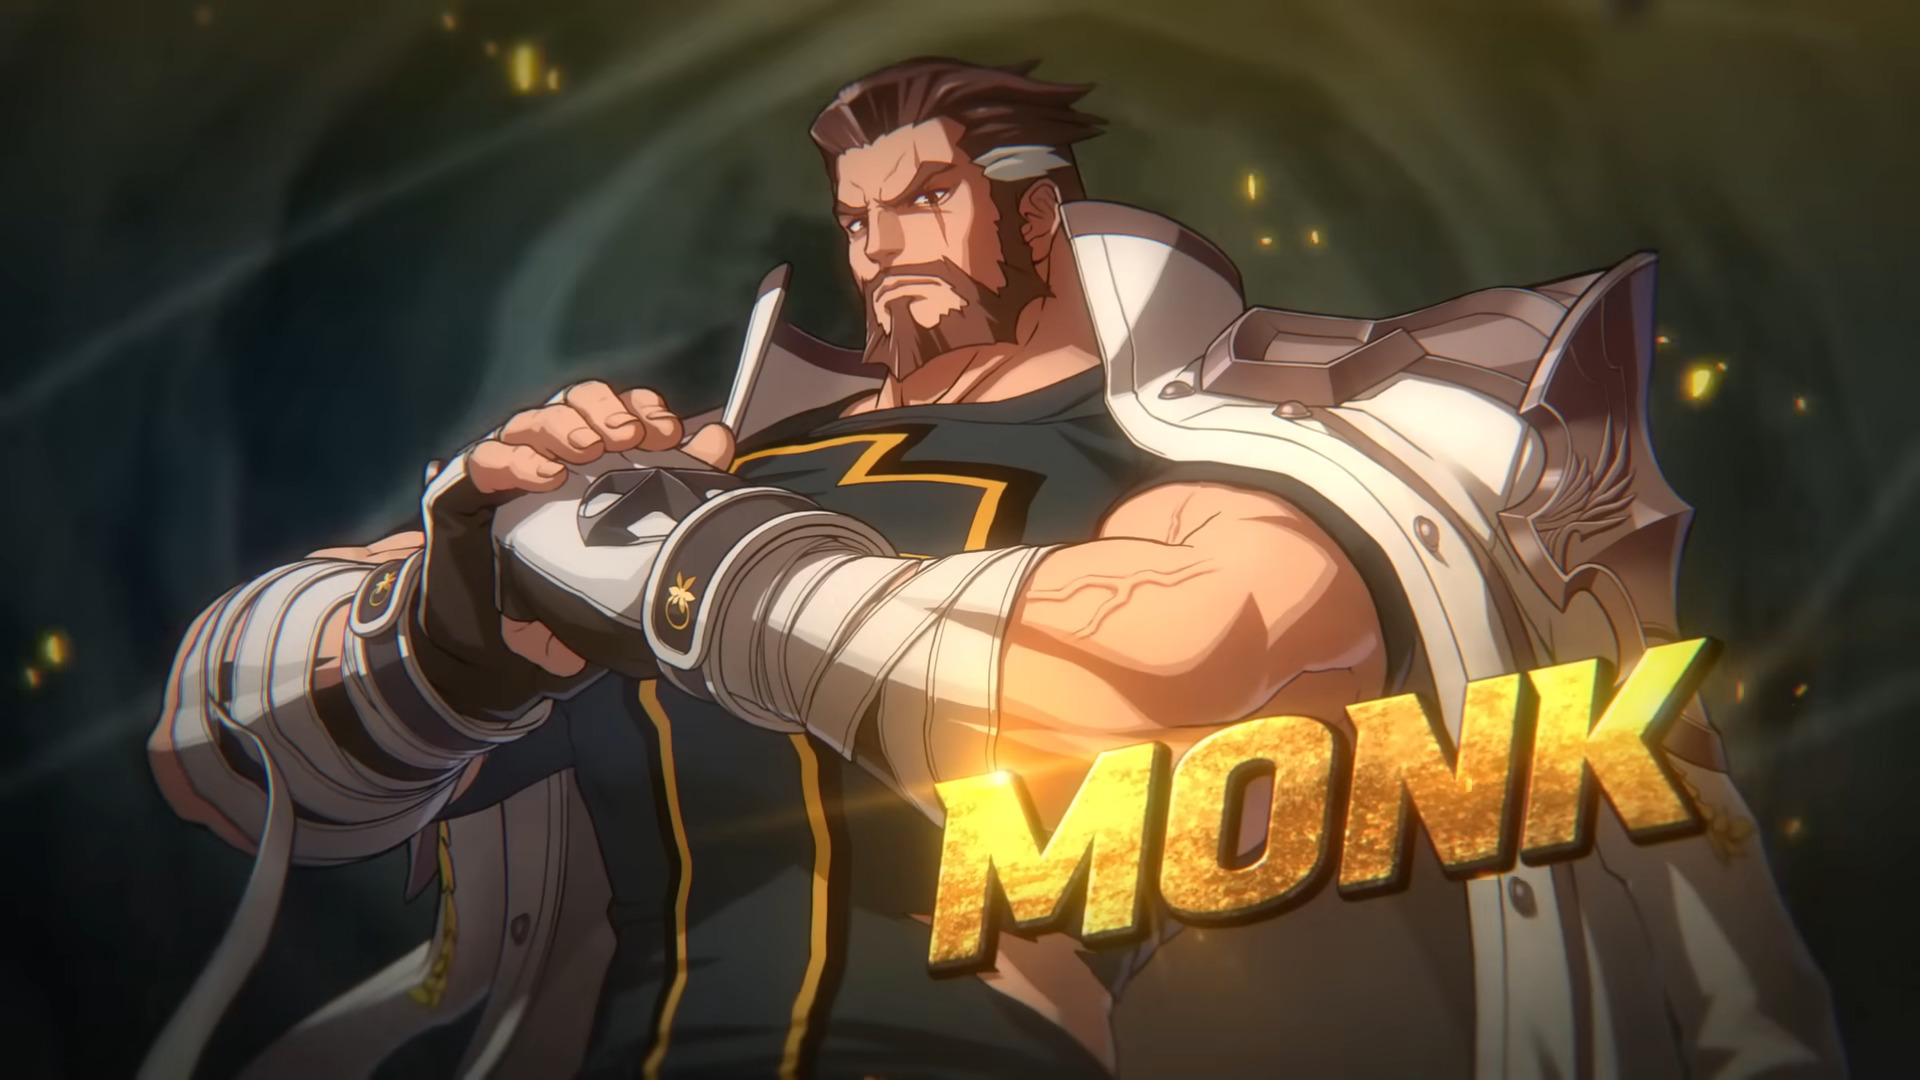 Le 14 mars, le jeu de combat DNF Duel sera mis à jour avec un nouveau personnage - Monk.